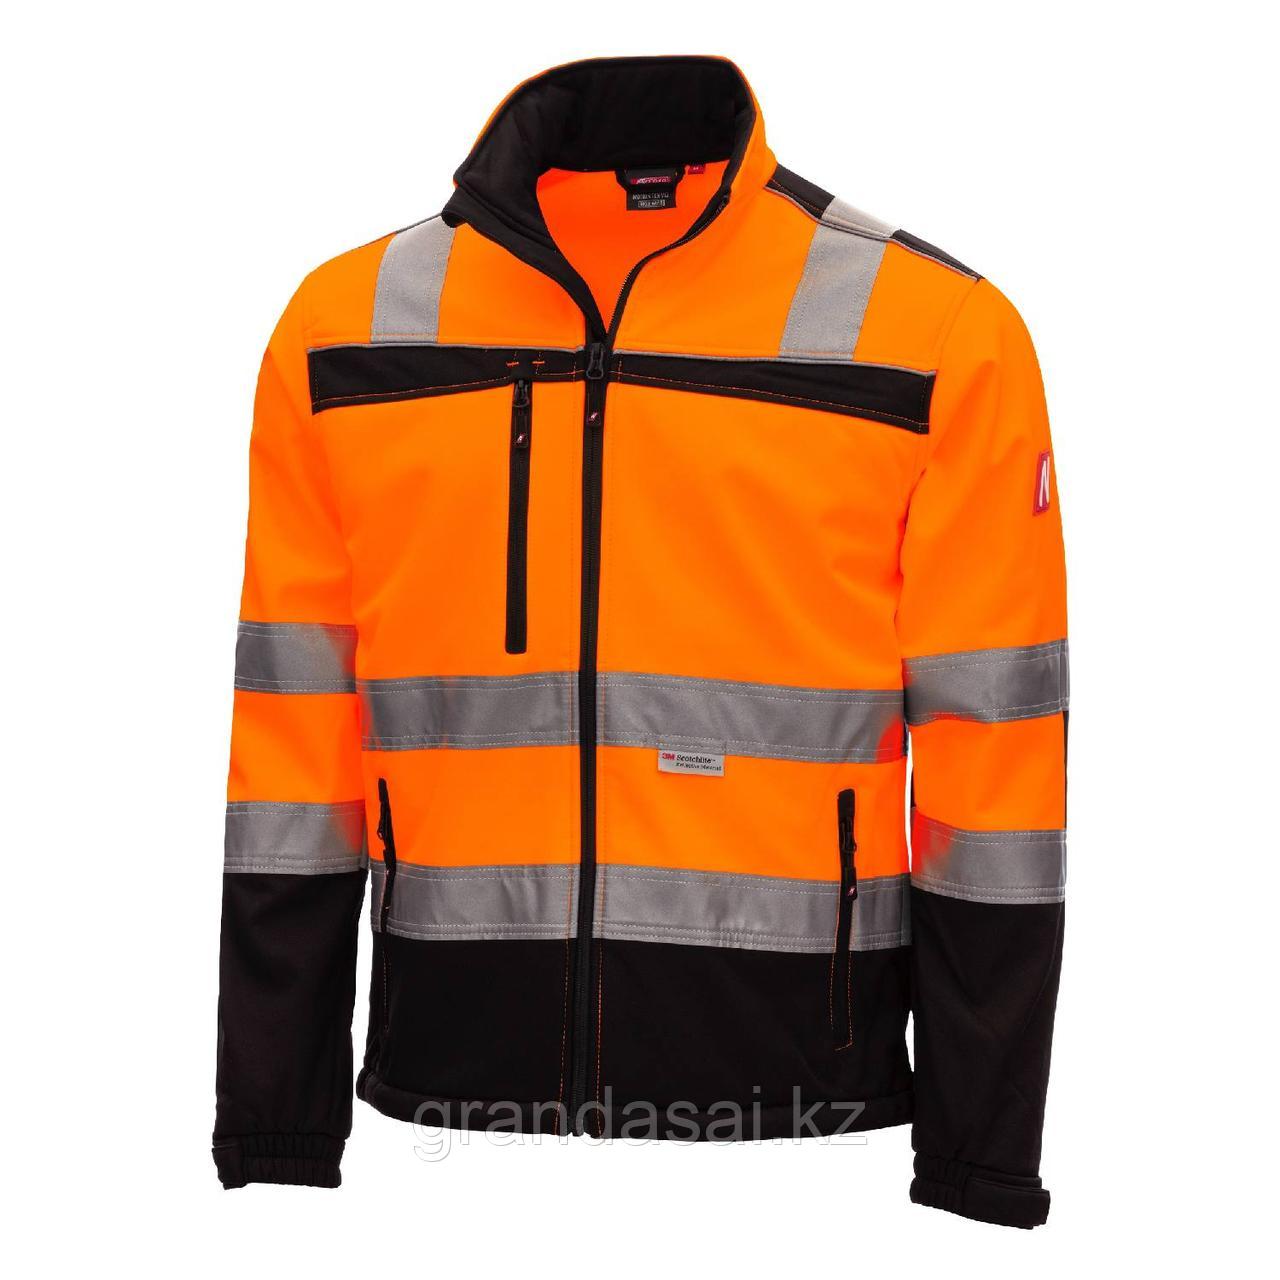 NITRAS 7170 куртка софтшелл повышенной видимости, оранжевая / чёрная